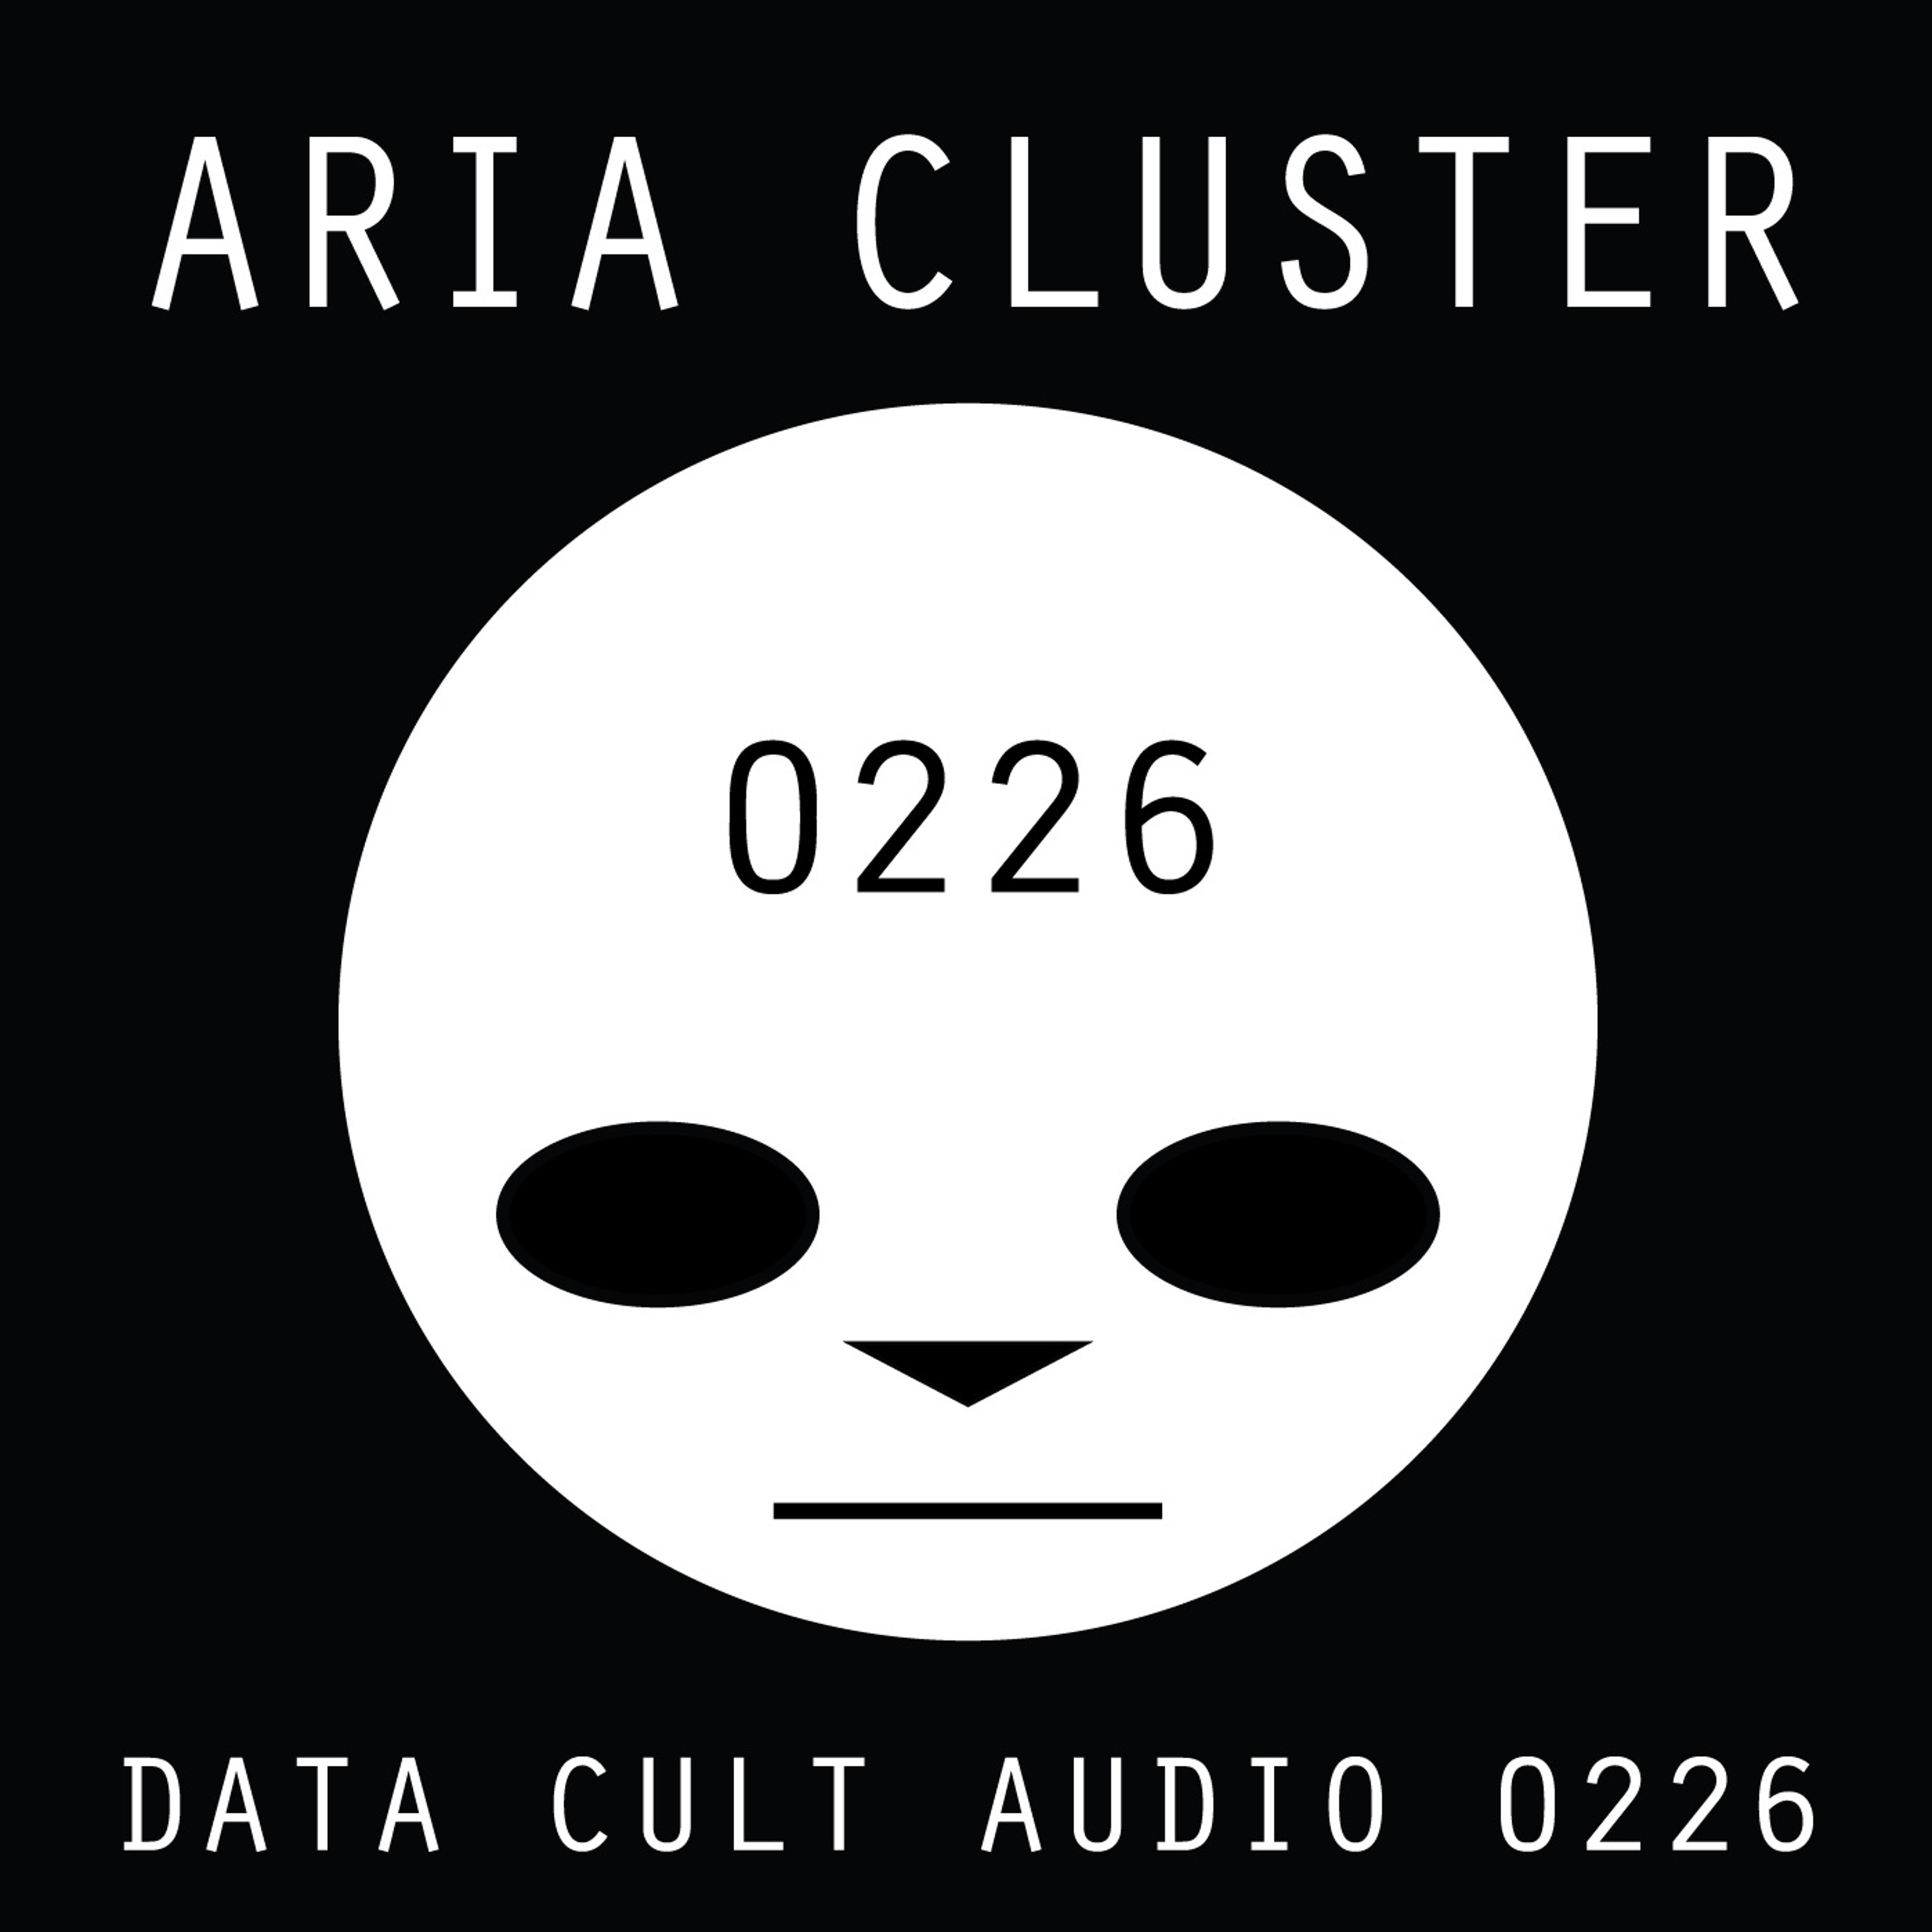 Data Cult Audio 0226 - Aria Cluster